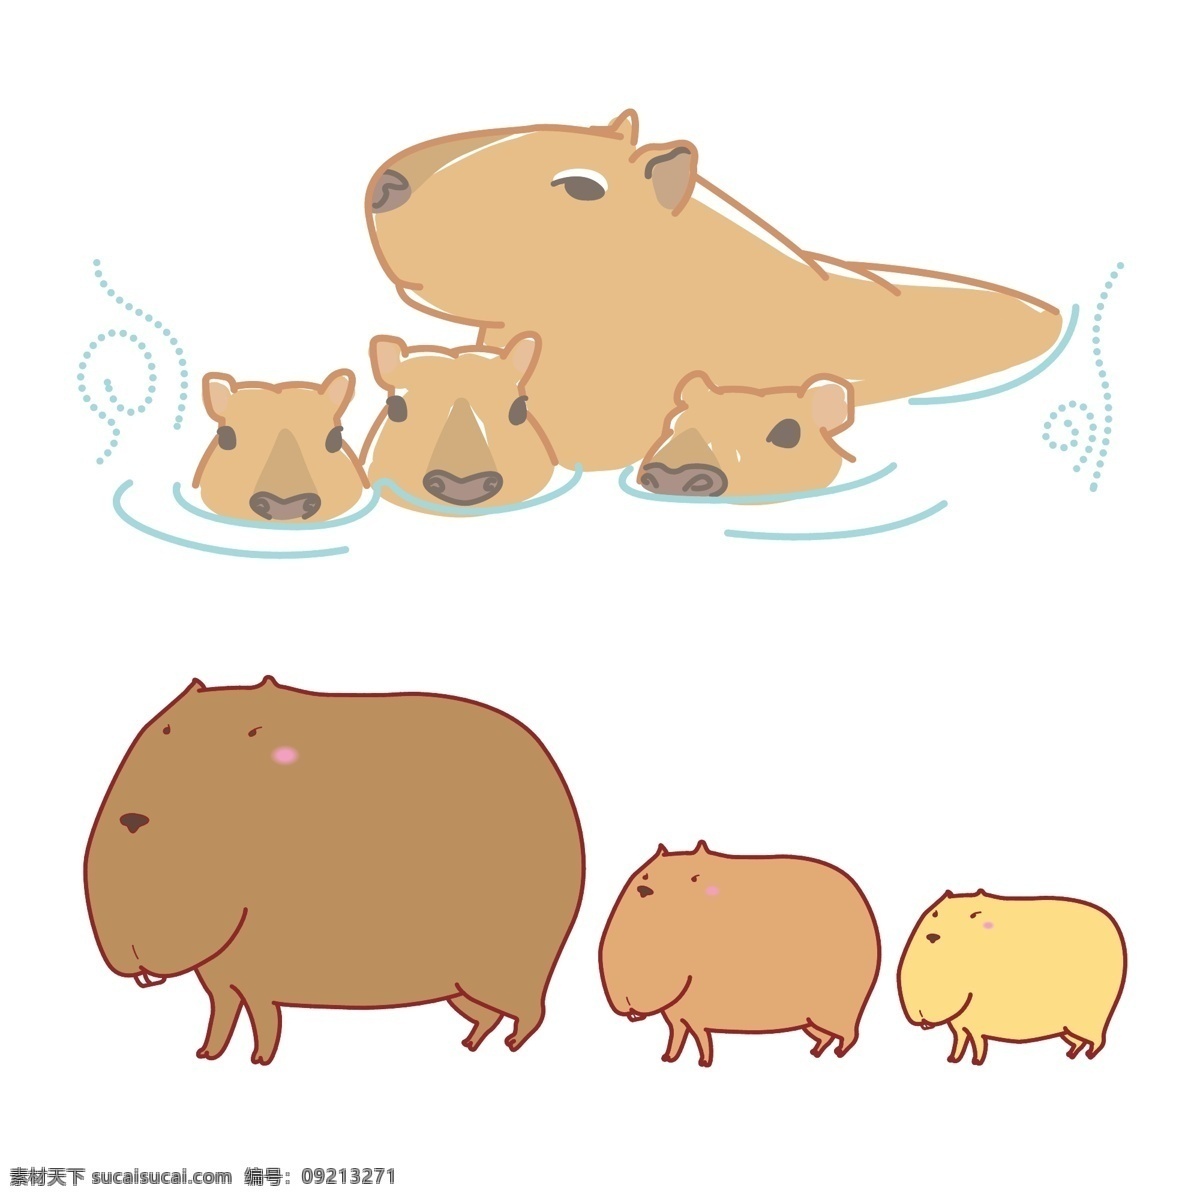 动物卡通图片 动物 卡通 可爱 水豚 泡温泉 动漫卡通插图 动漫动画